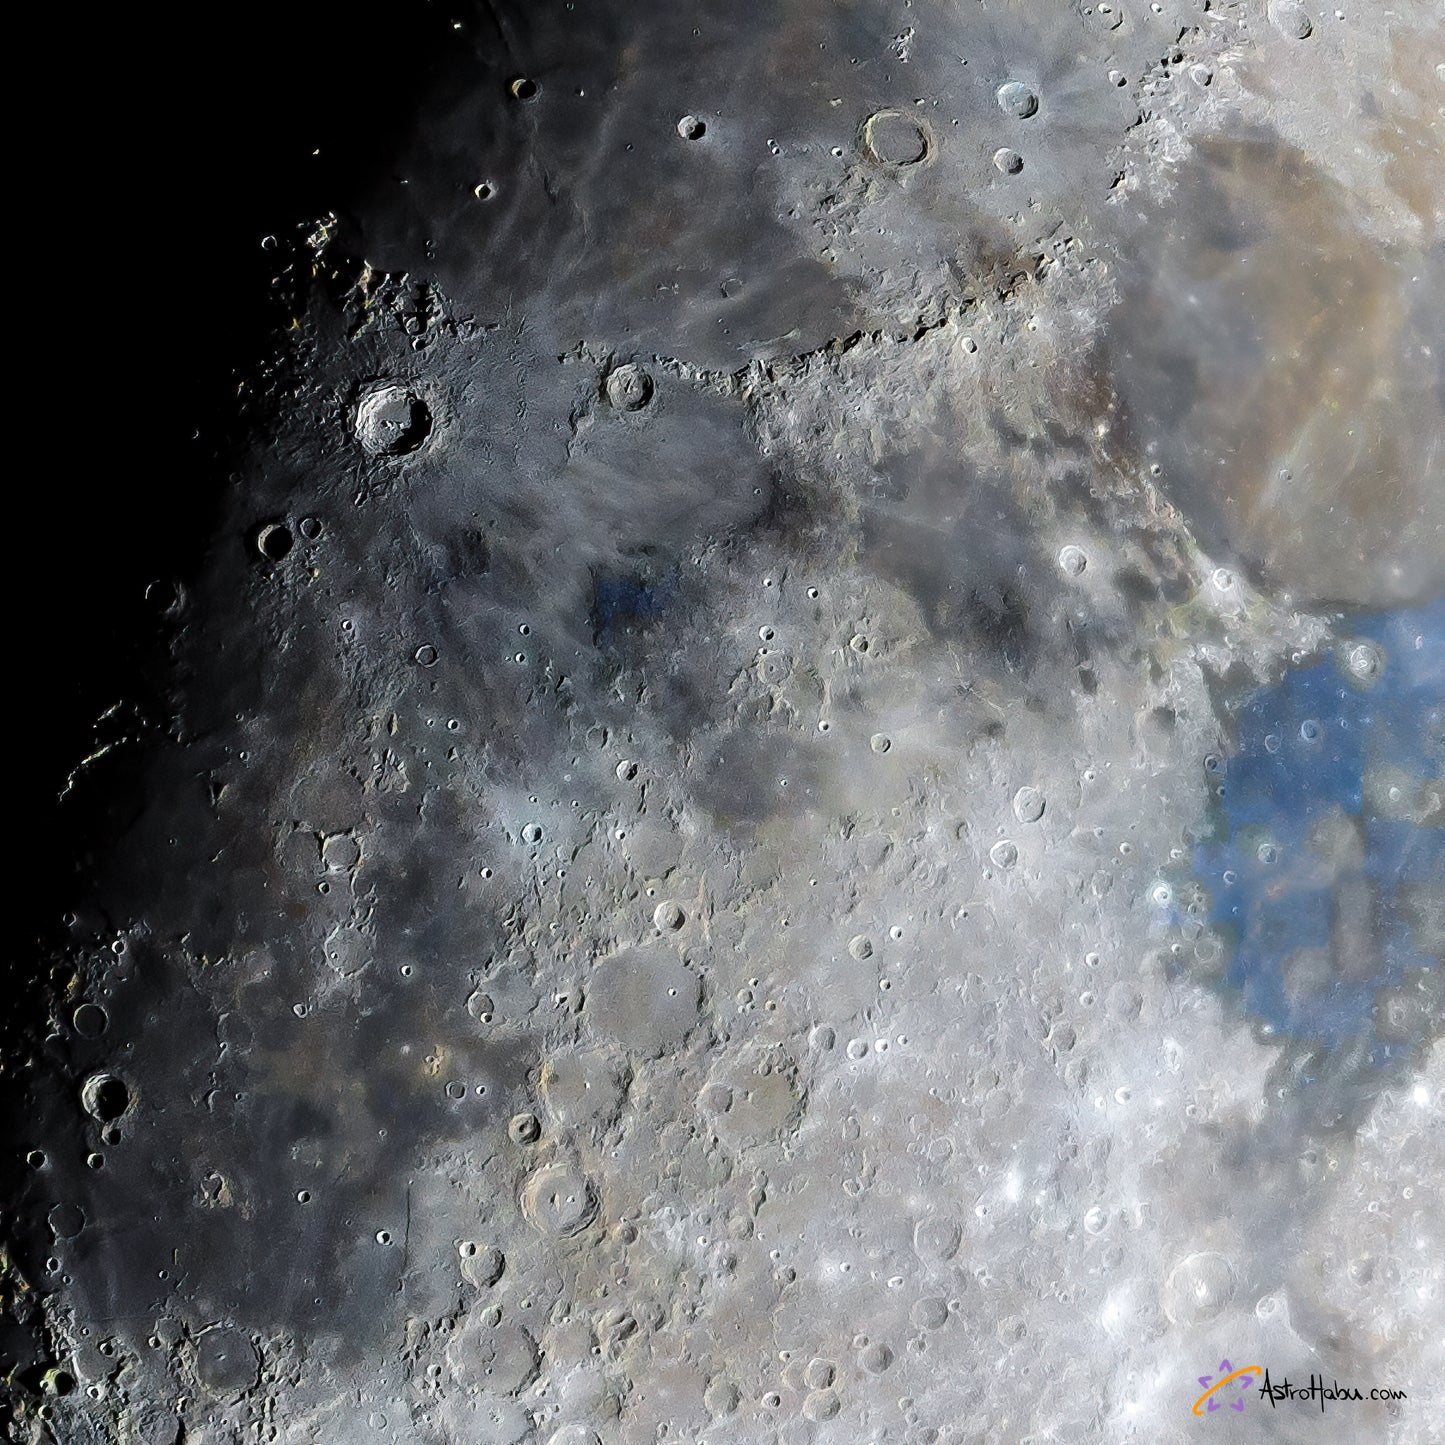 Copernicus crater and Apollo 11 landing site